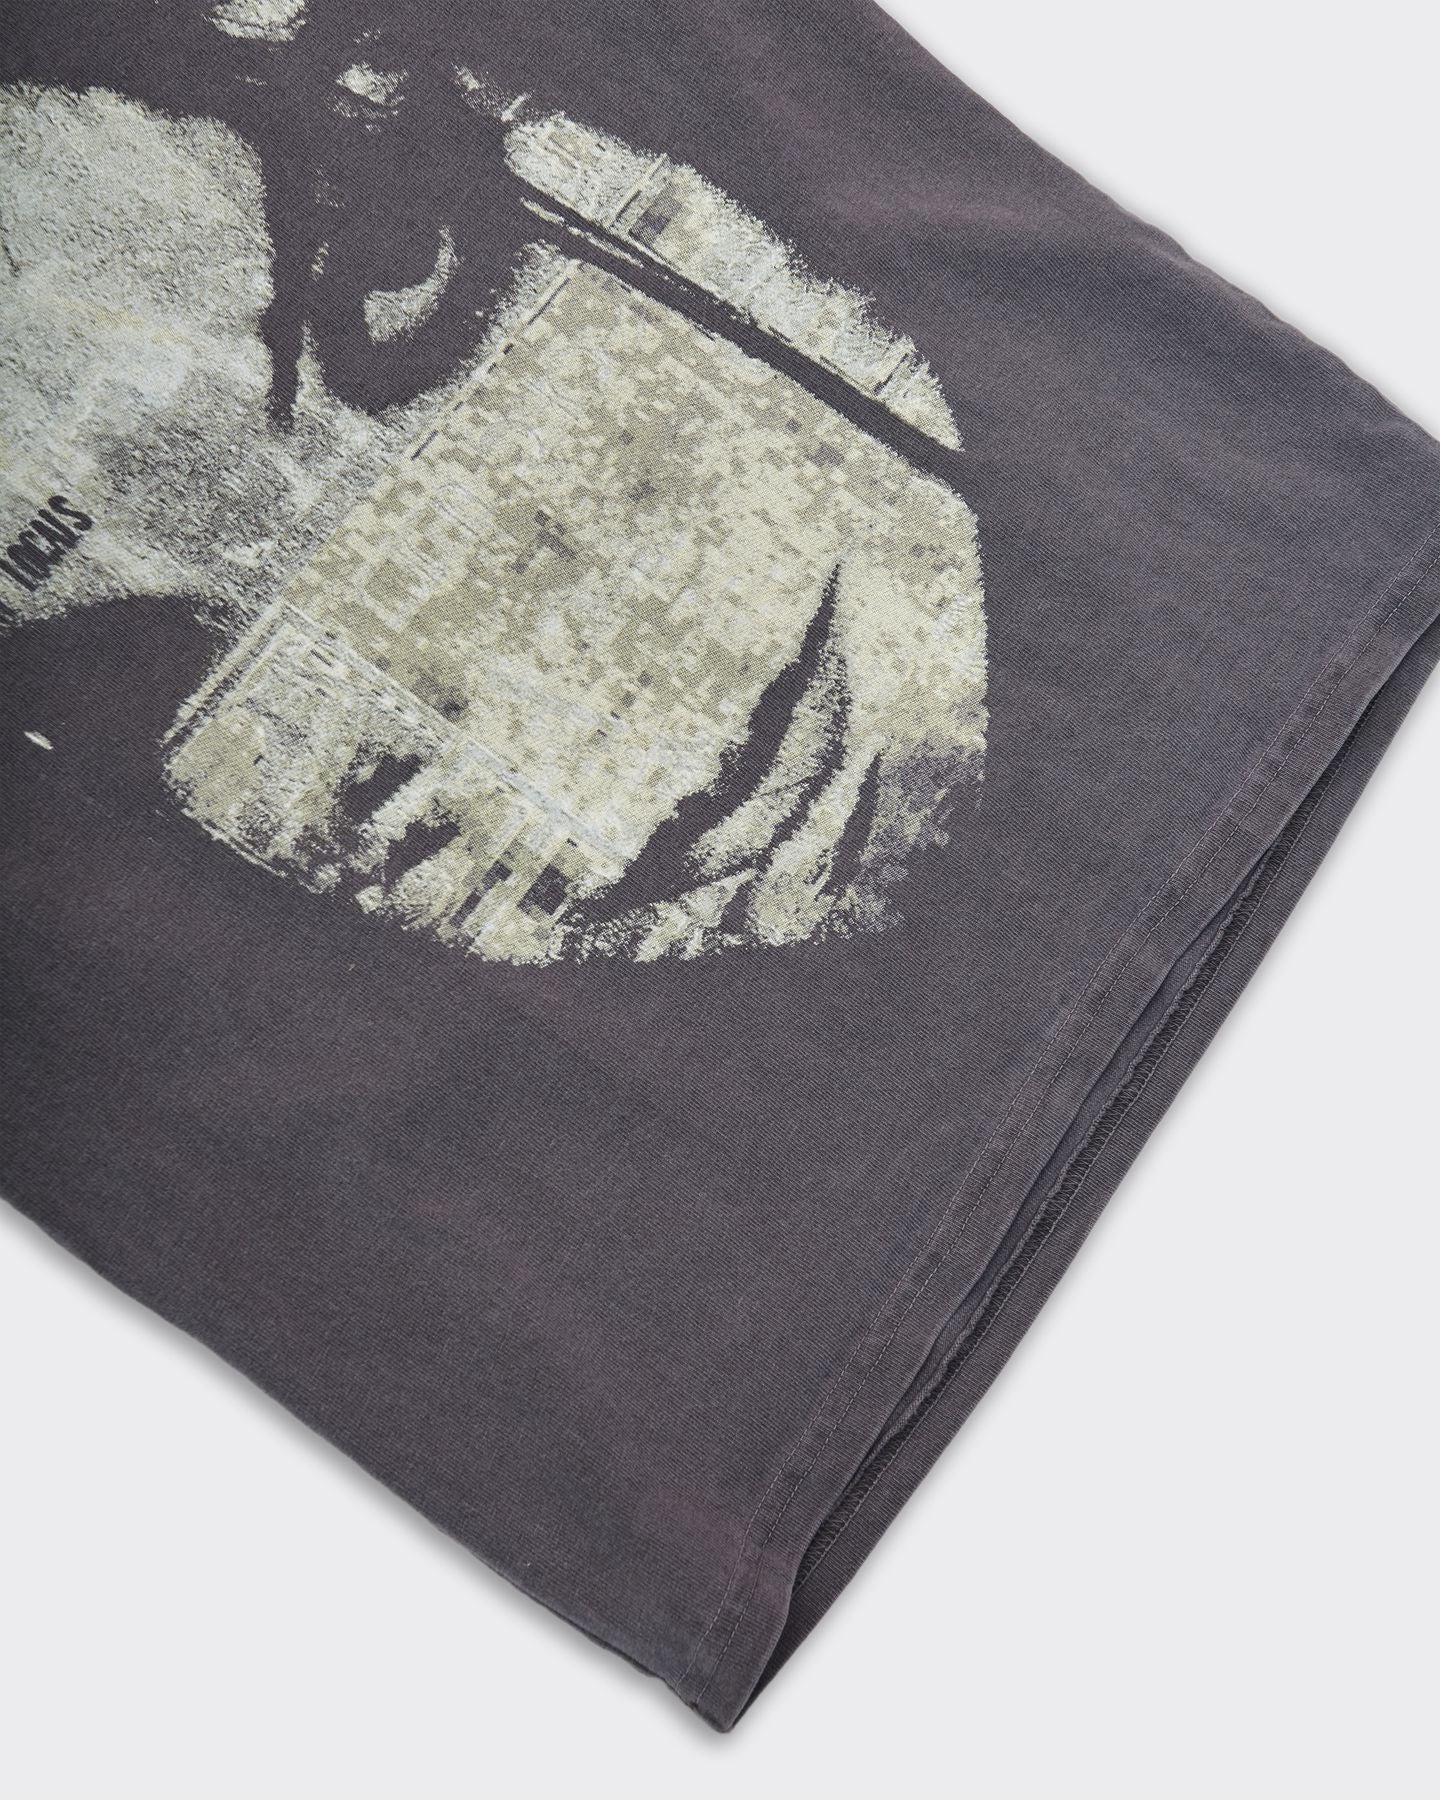 Evanescence Washed Black T-Shirt